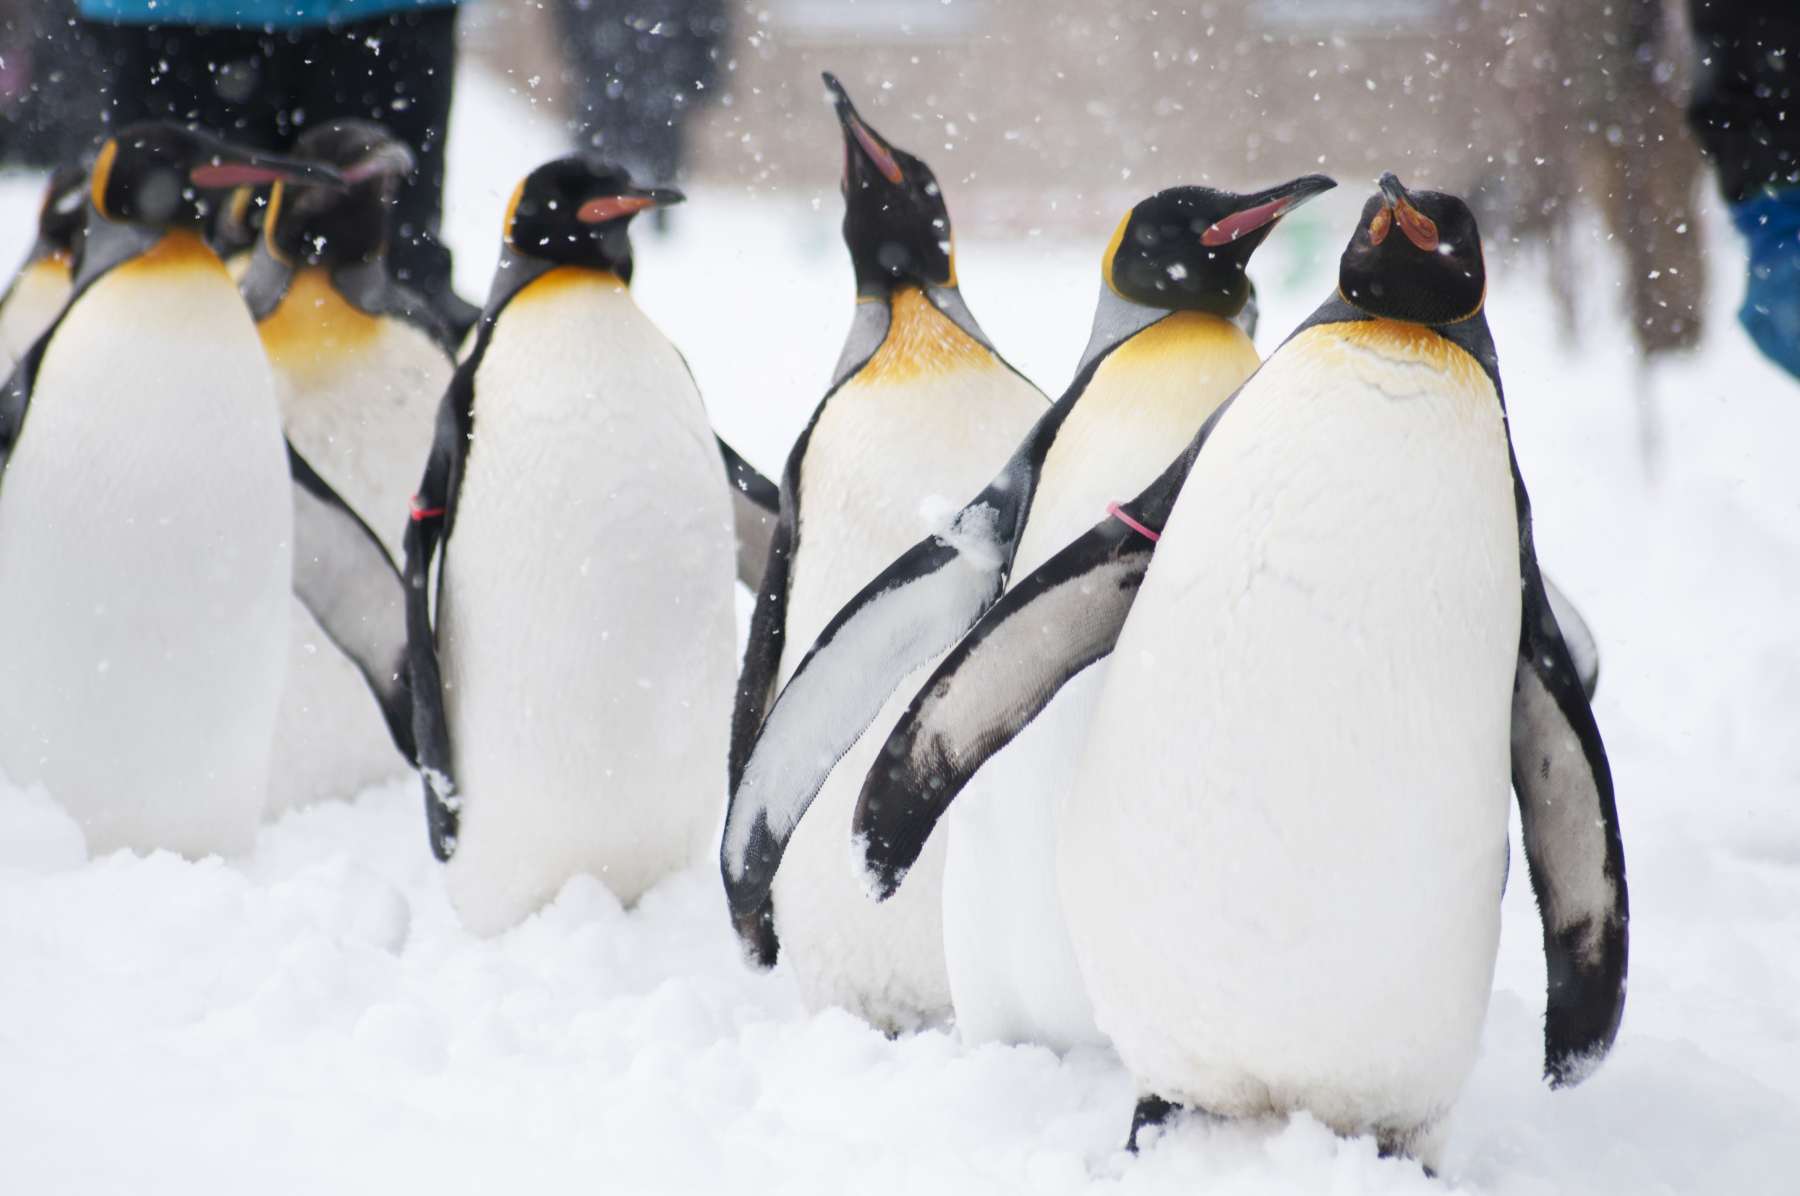 Tierfotografie von Kaiserpinguinen im Schnee